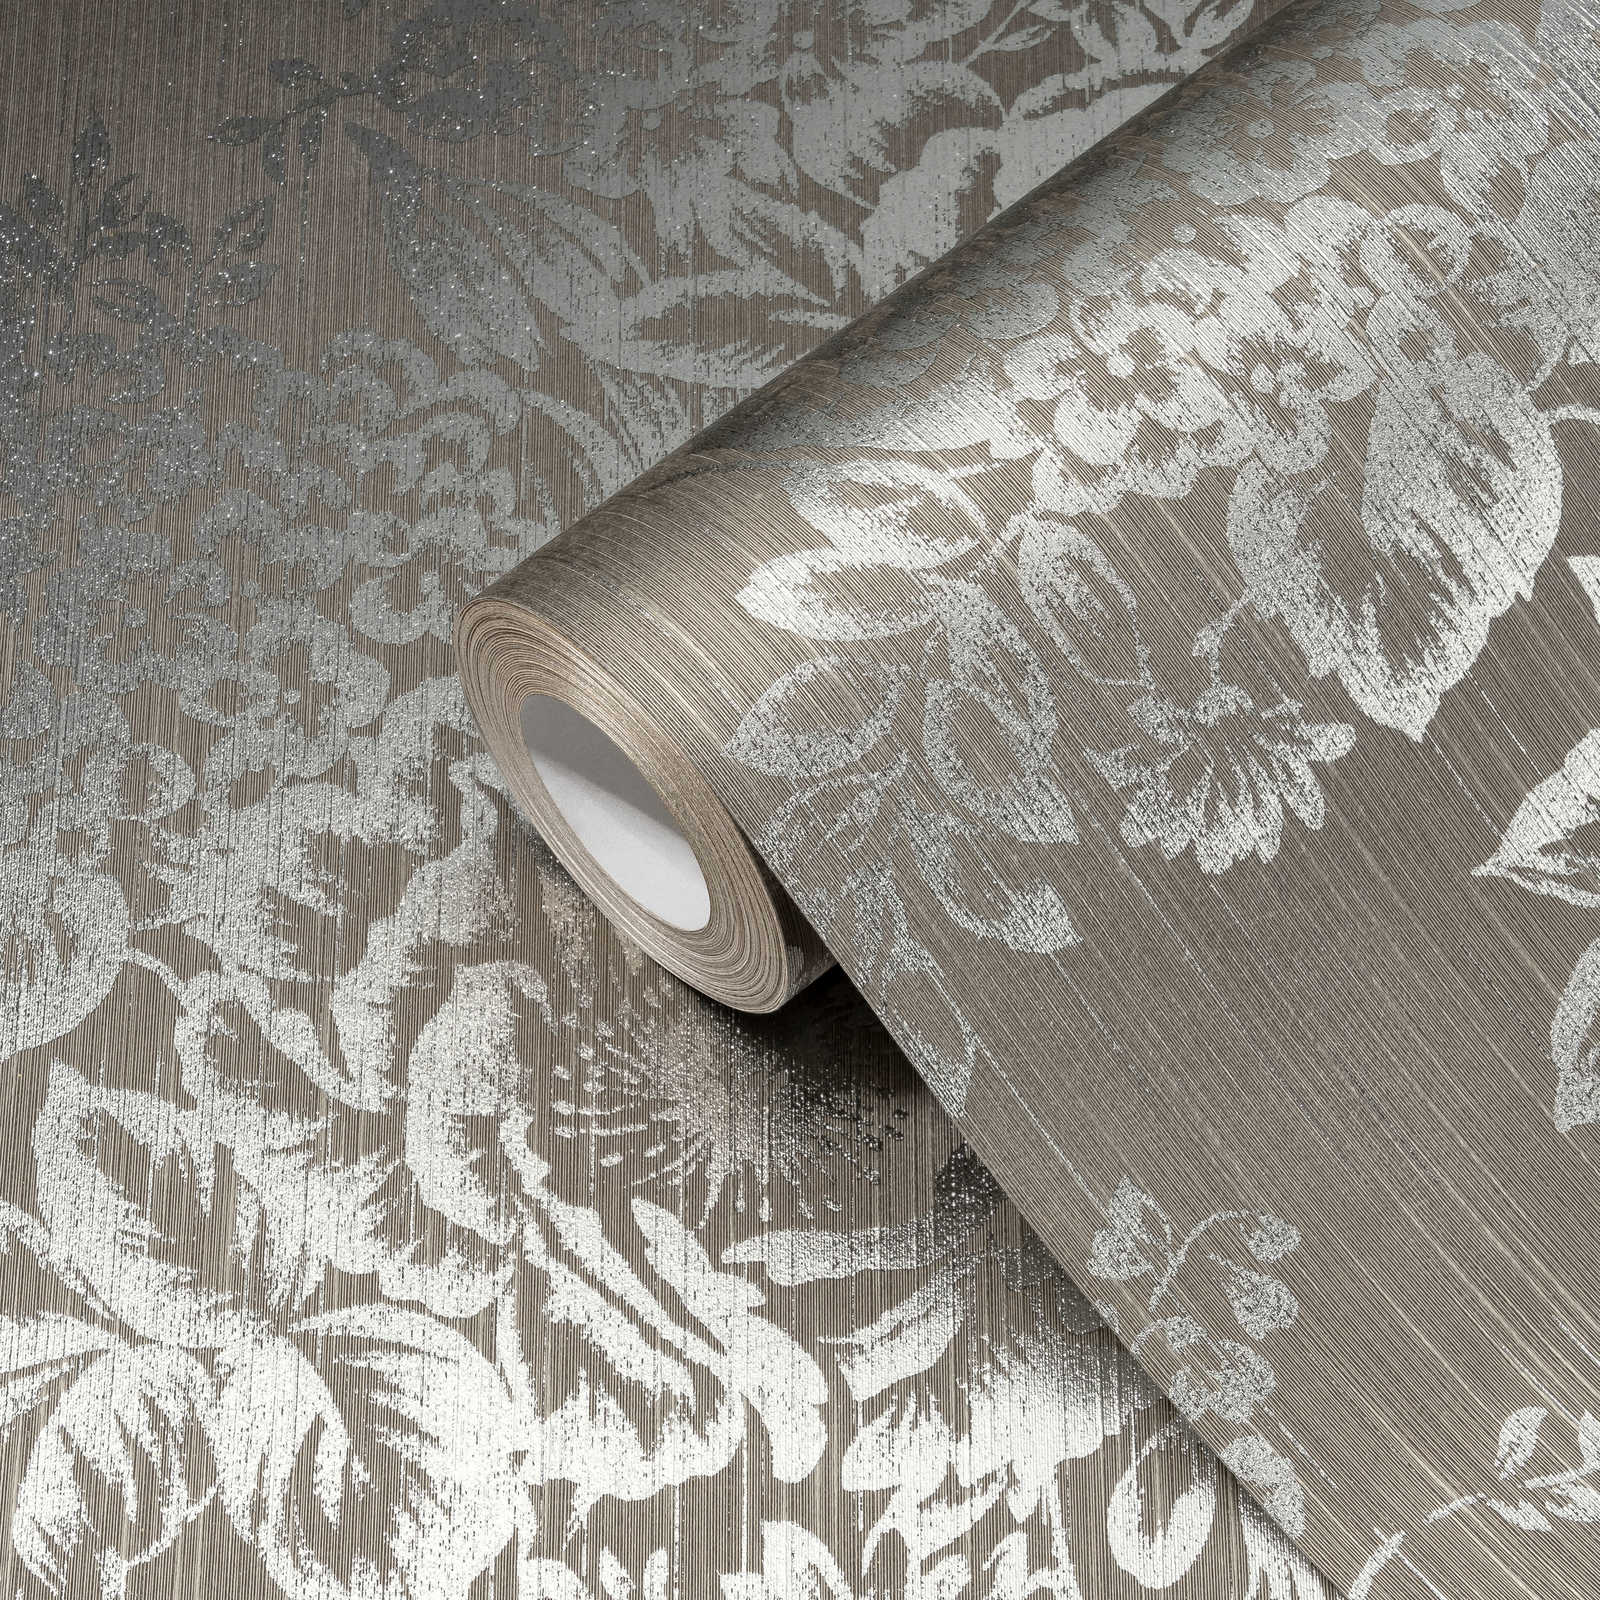             Textuurbehang met zilveren bloemenpatroon - zilver, bruin
        